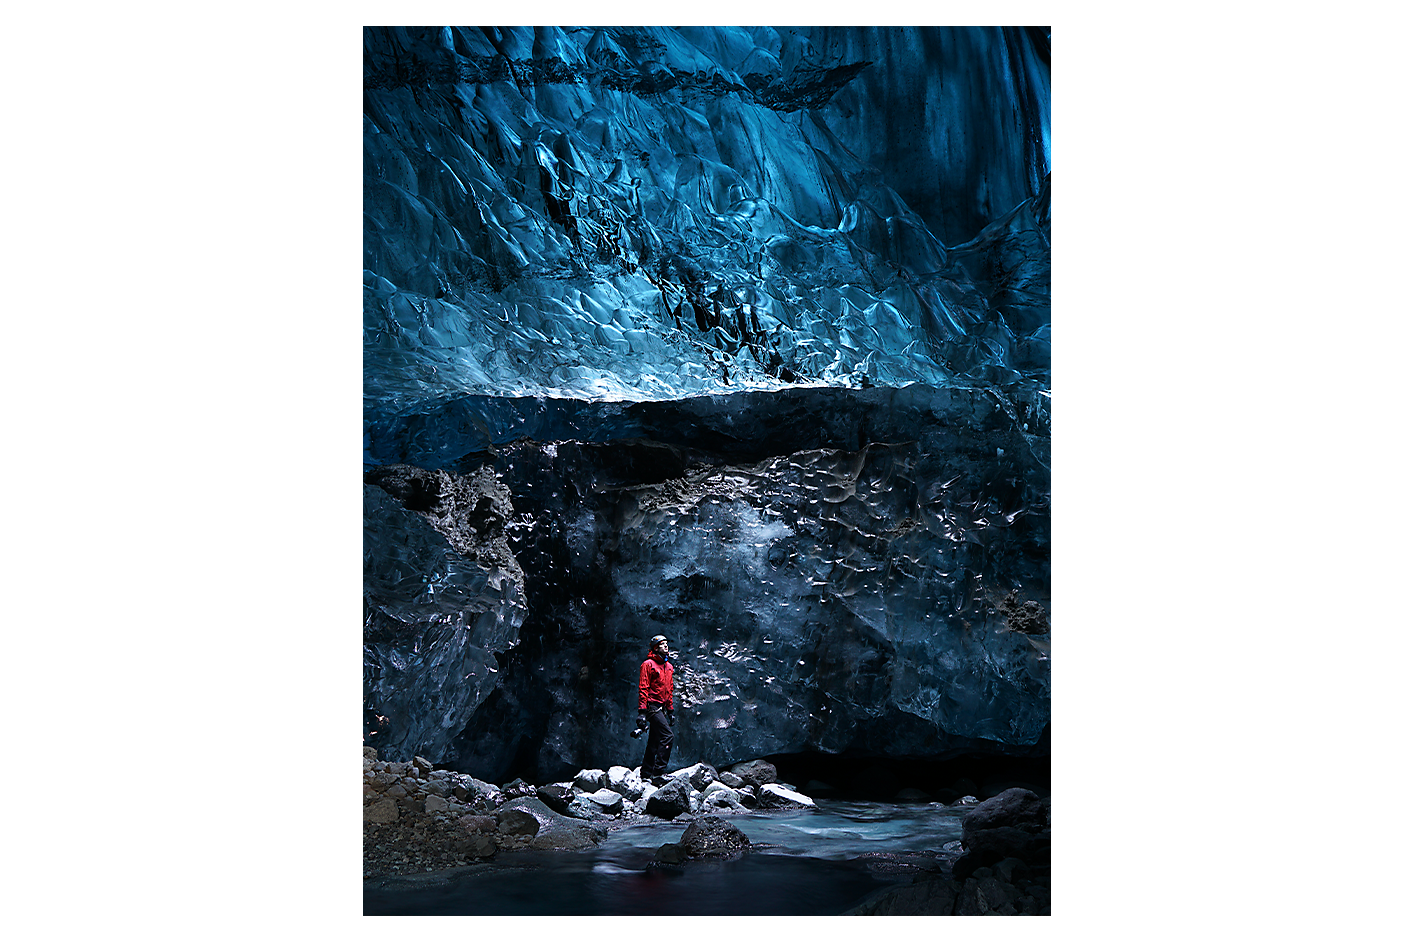 얼음 동굴 안에 있는 남성을 보여주는 예시 이미지